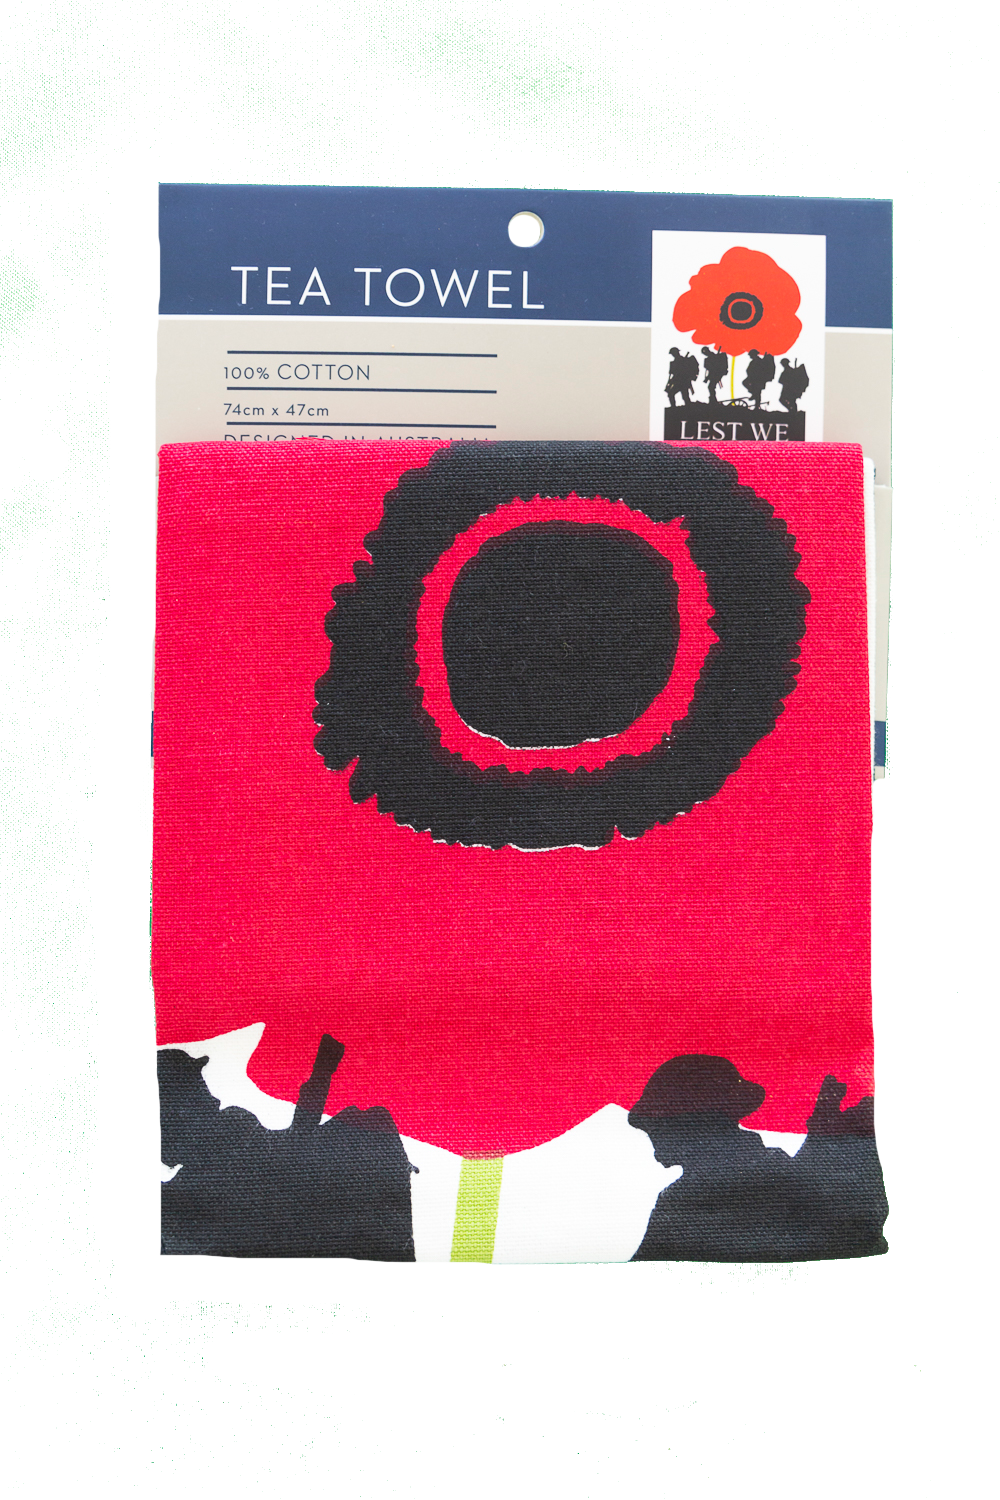 Tea Towel - Lest We Forget